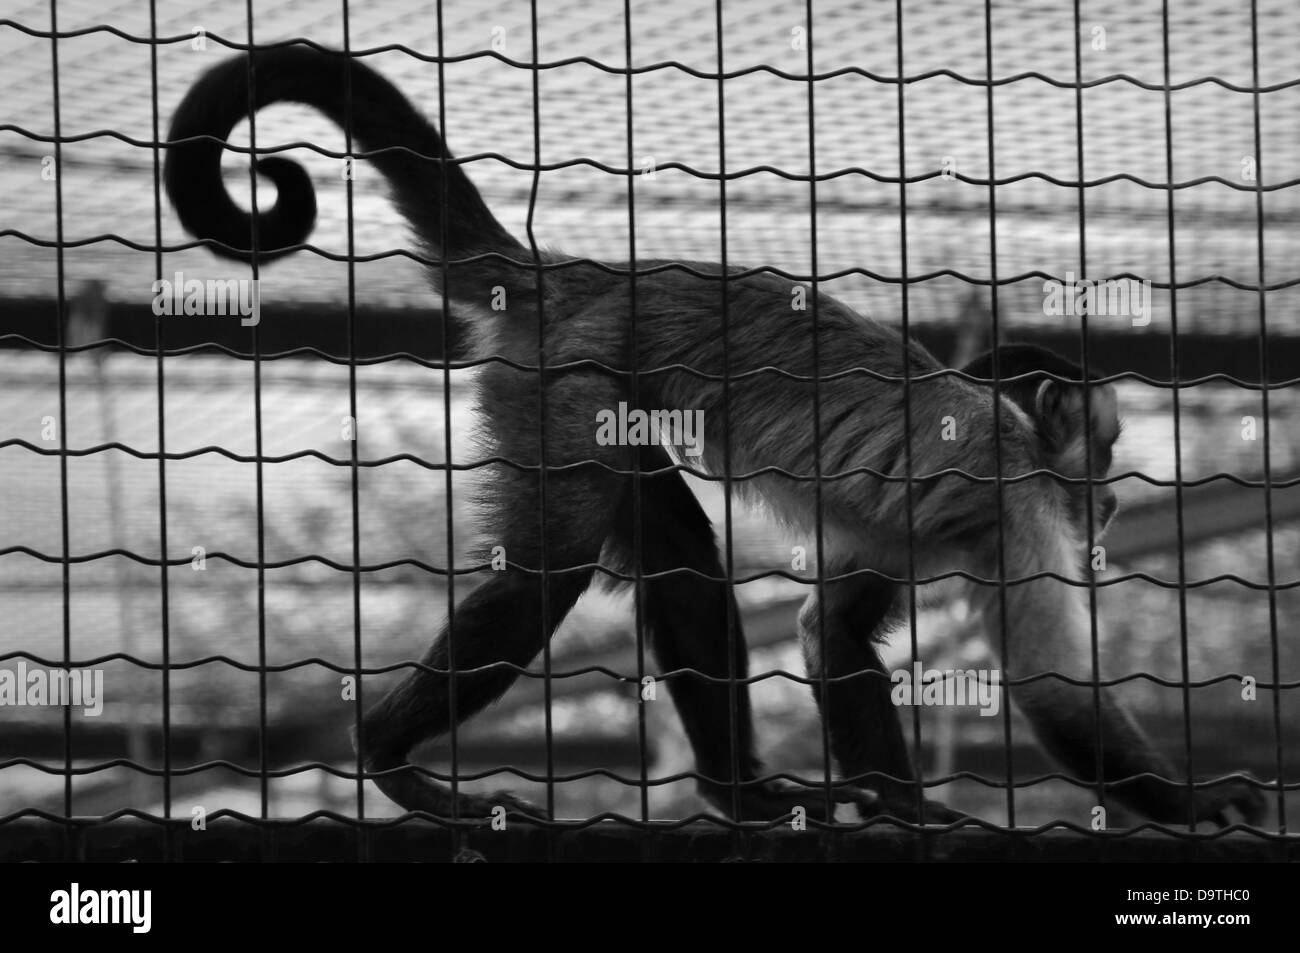 Singe-écureuil animal captif dans une cage. Noir et blanc. Banque D'Images